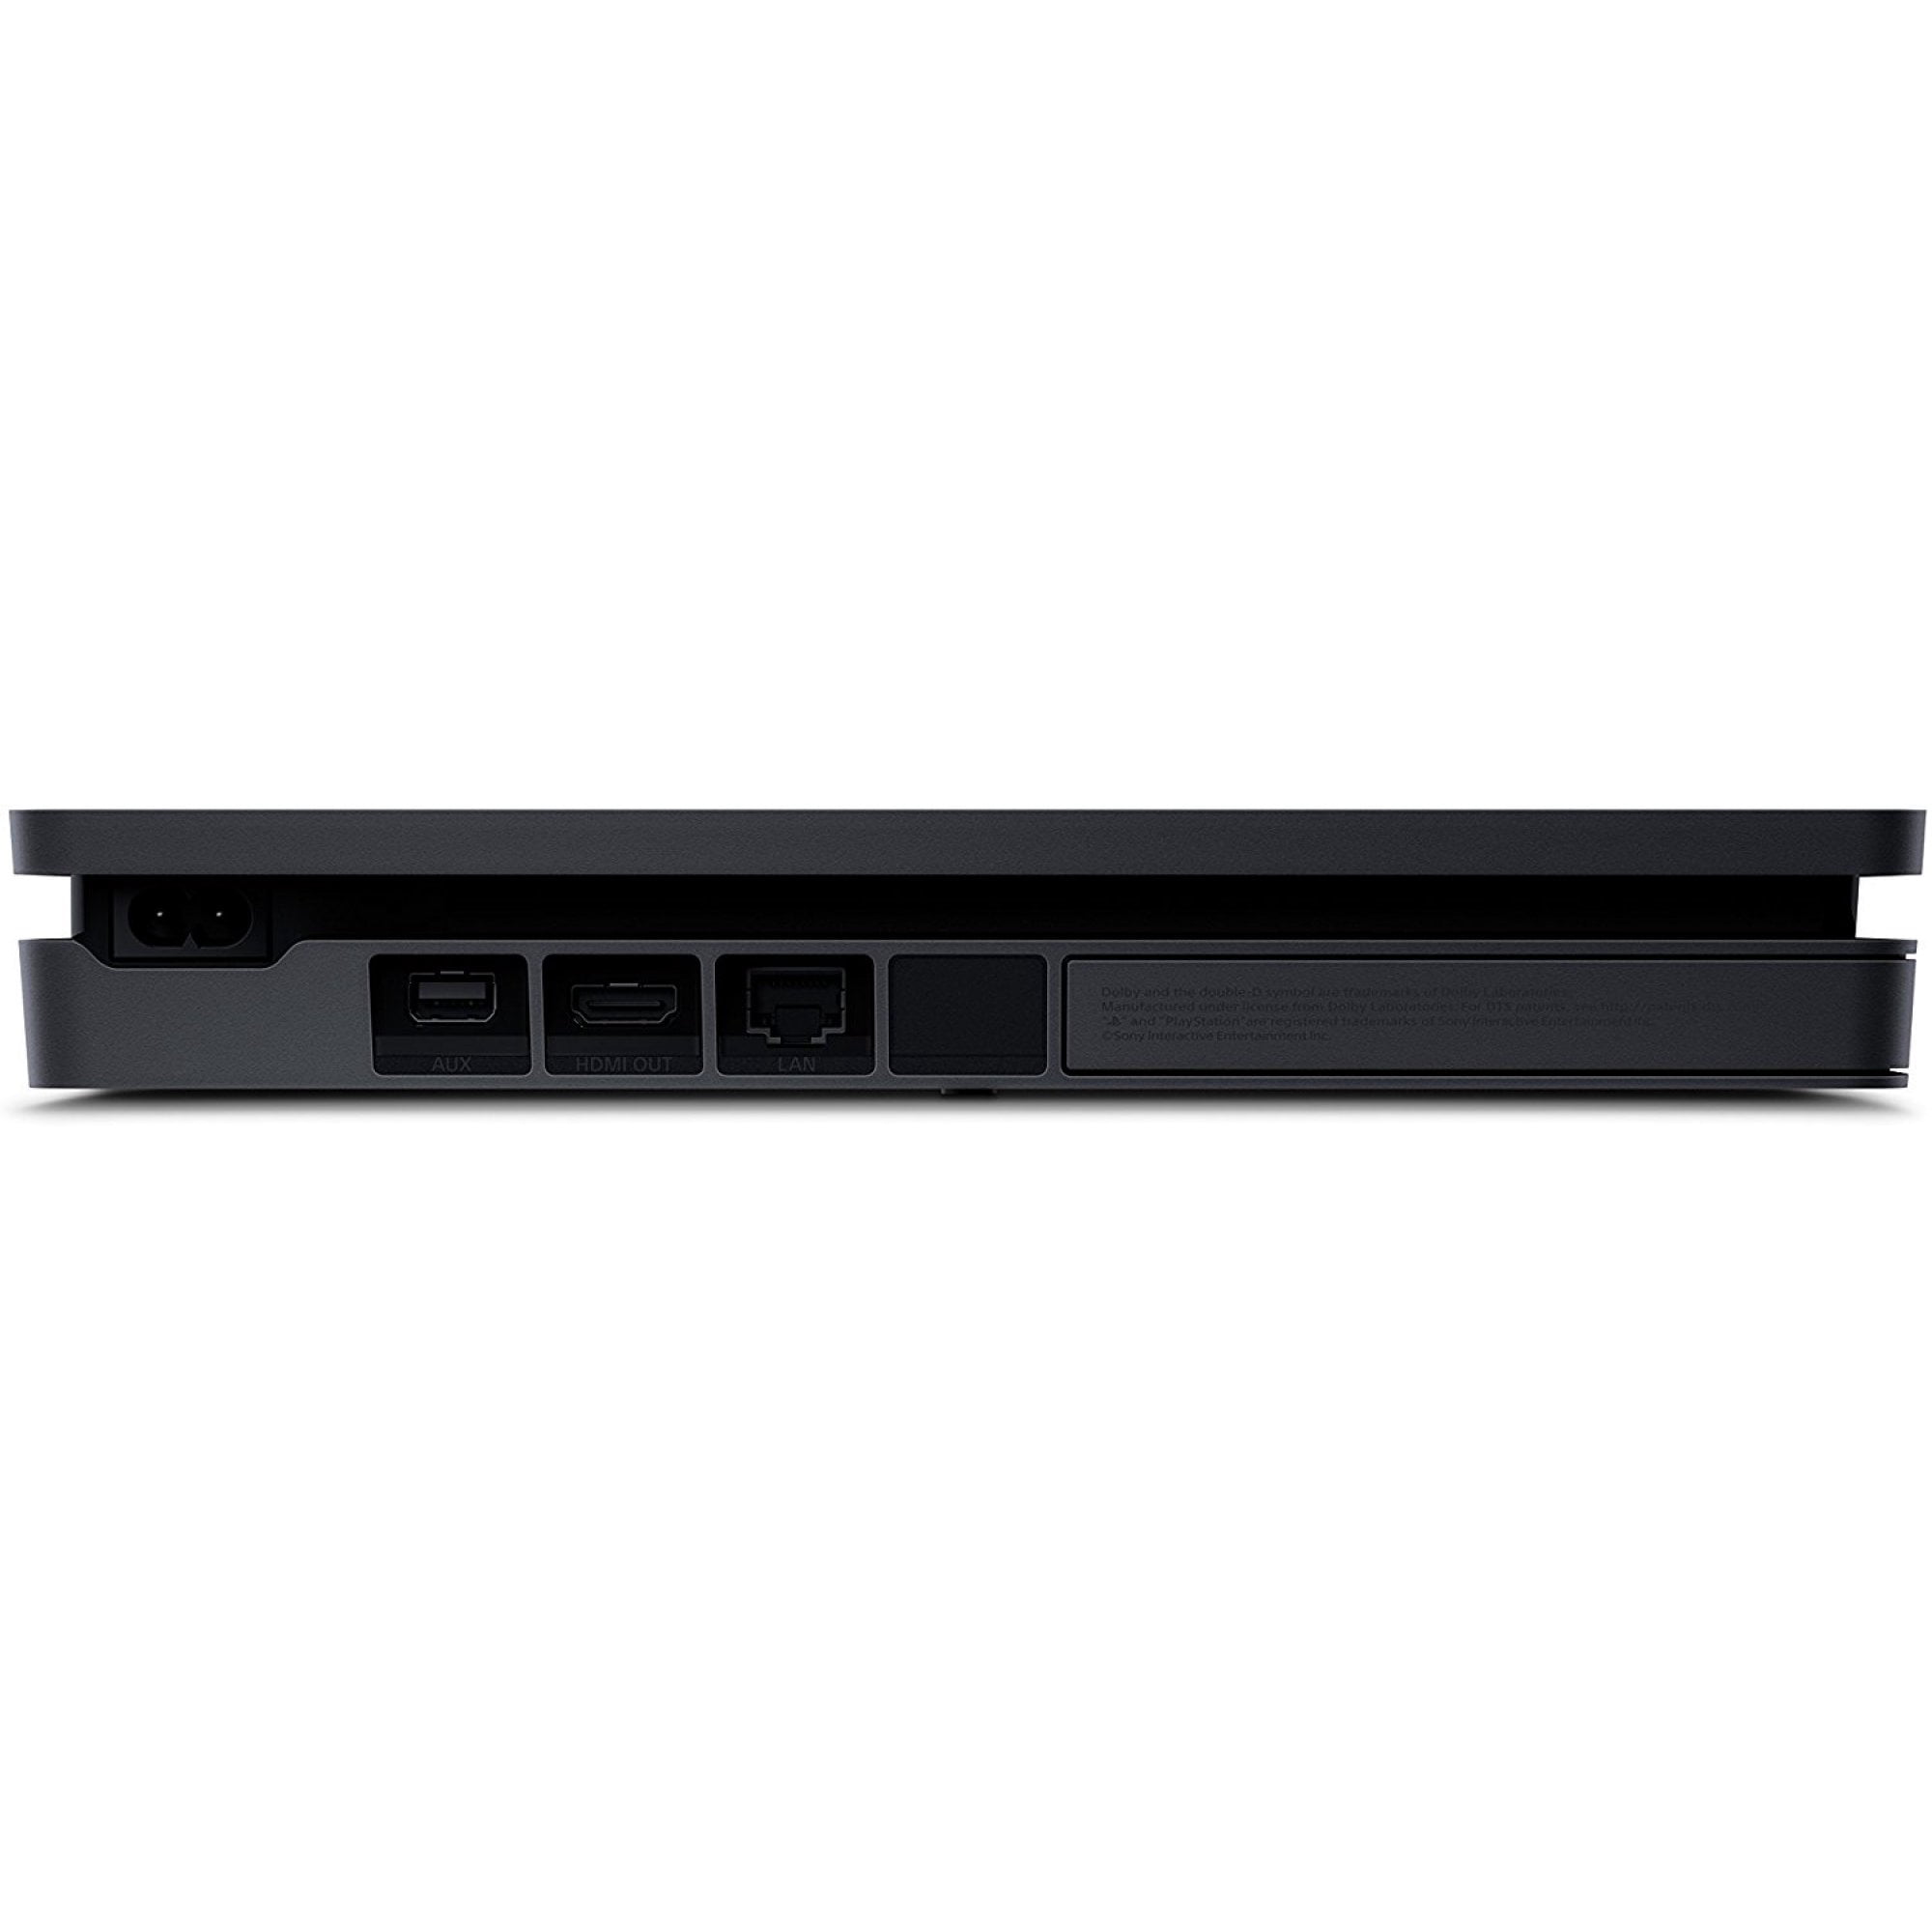 Sony PlayStation 4 Slim 1TB Gaming Console, Black, CUHB